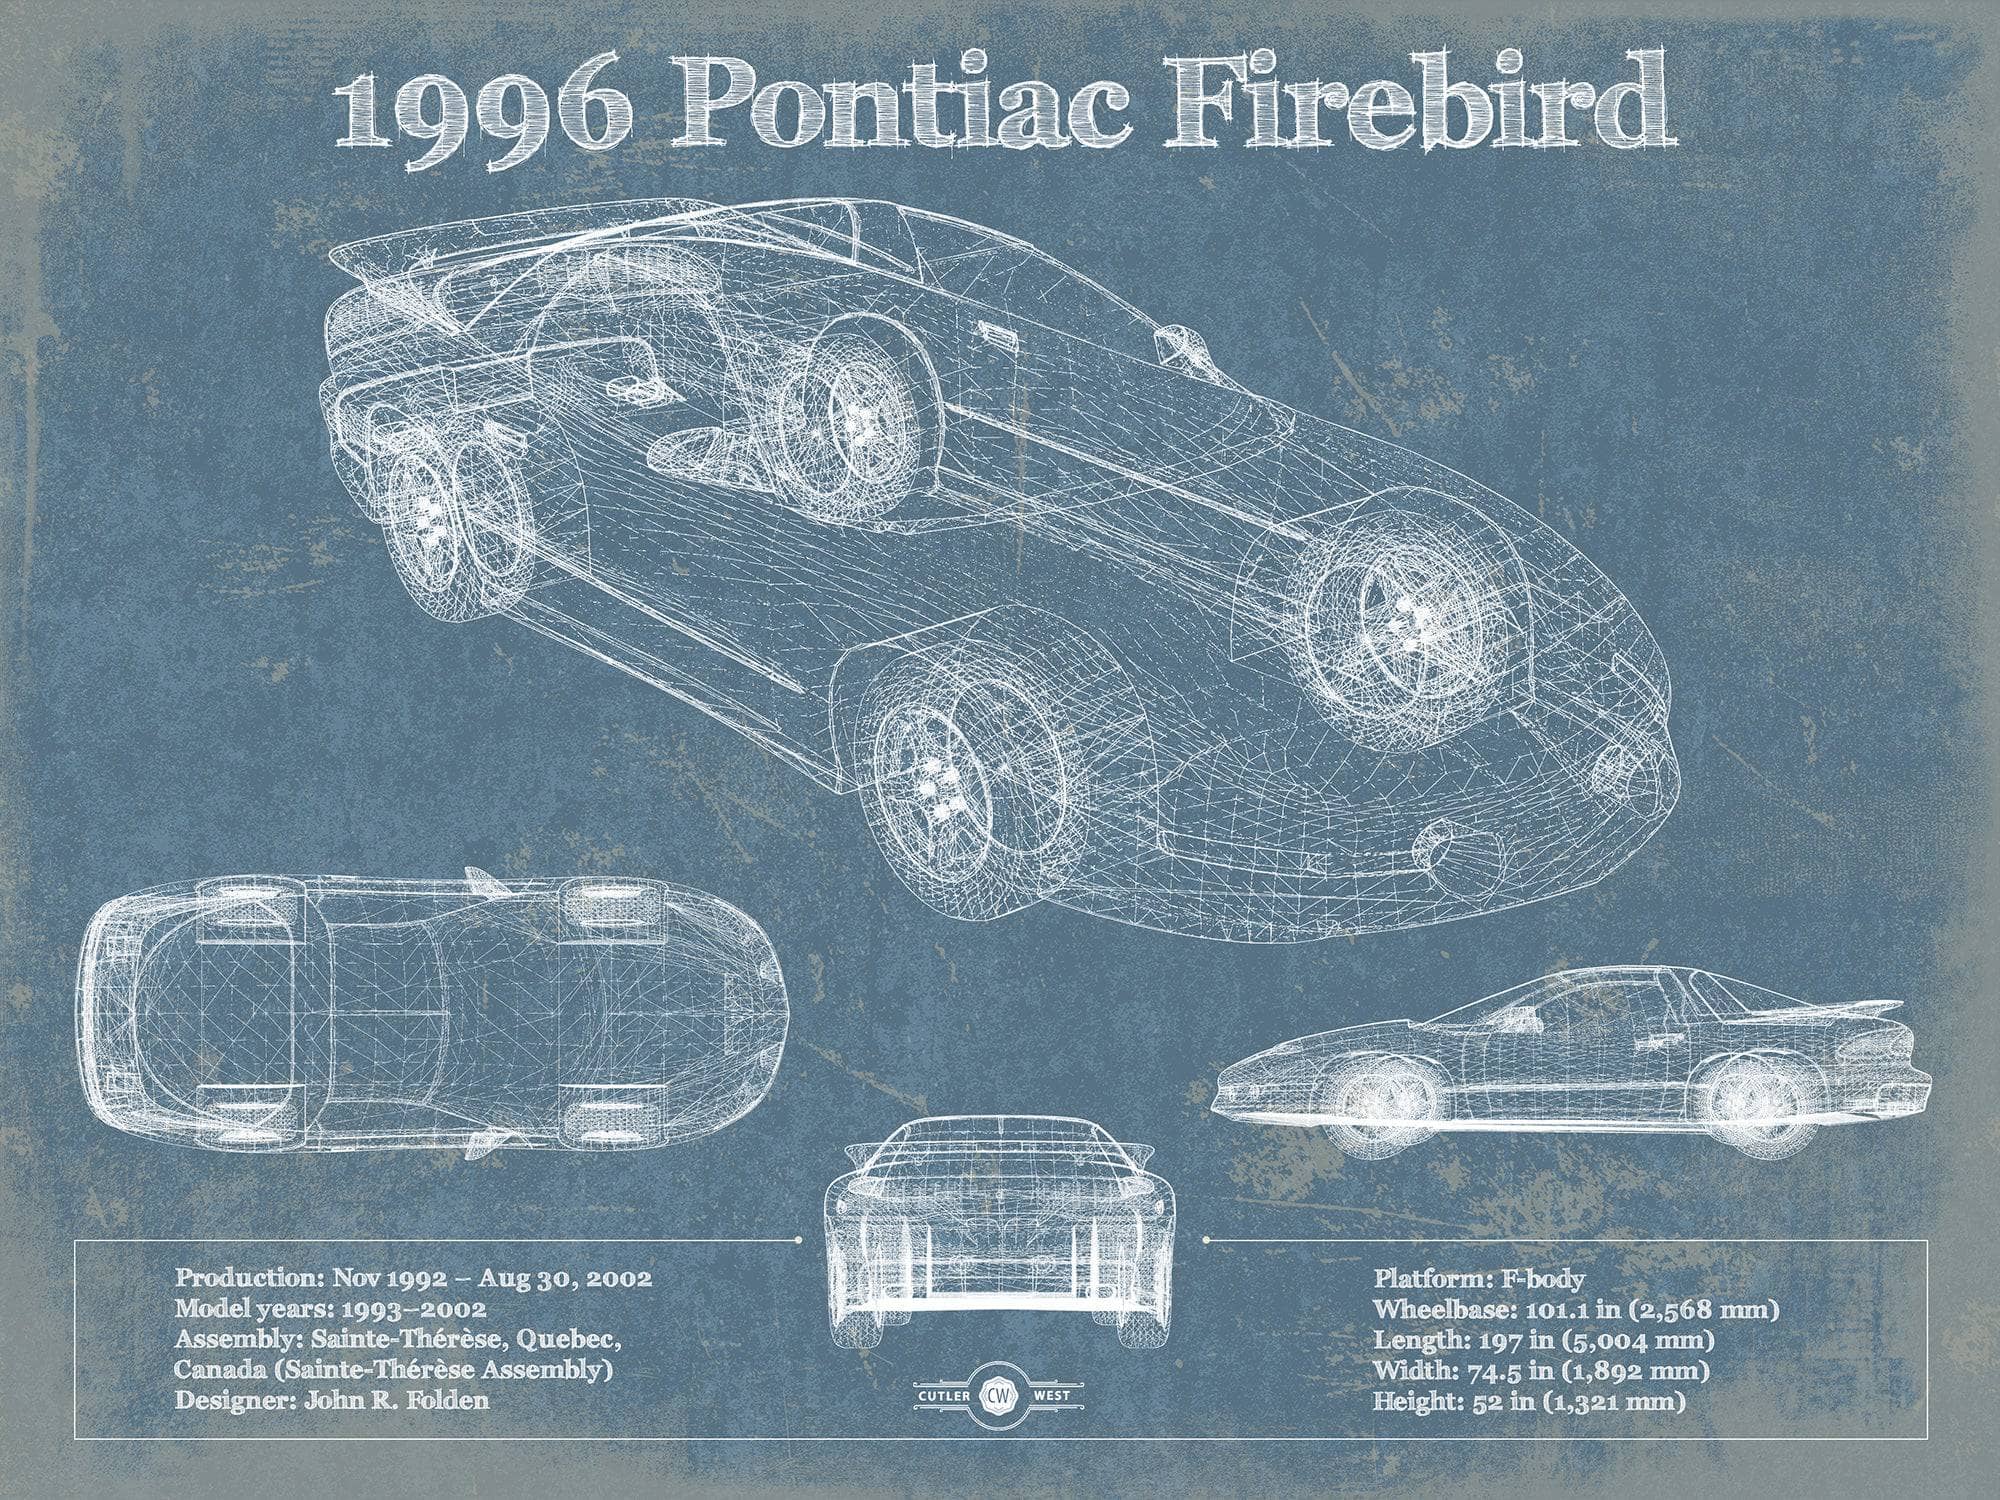 1996 Pontiac Firebird Trans Am Vintage Auto Print